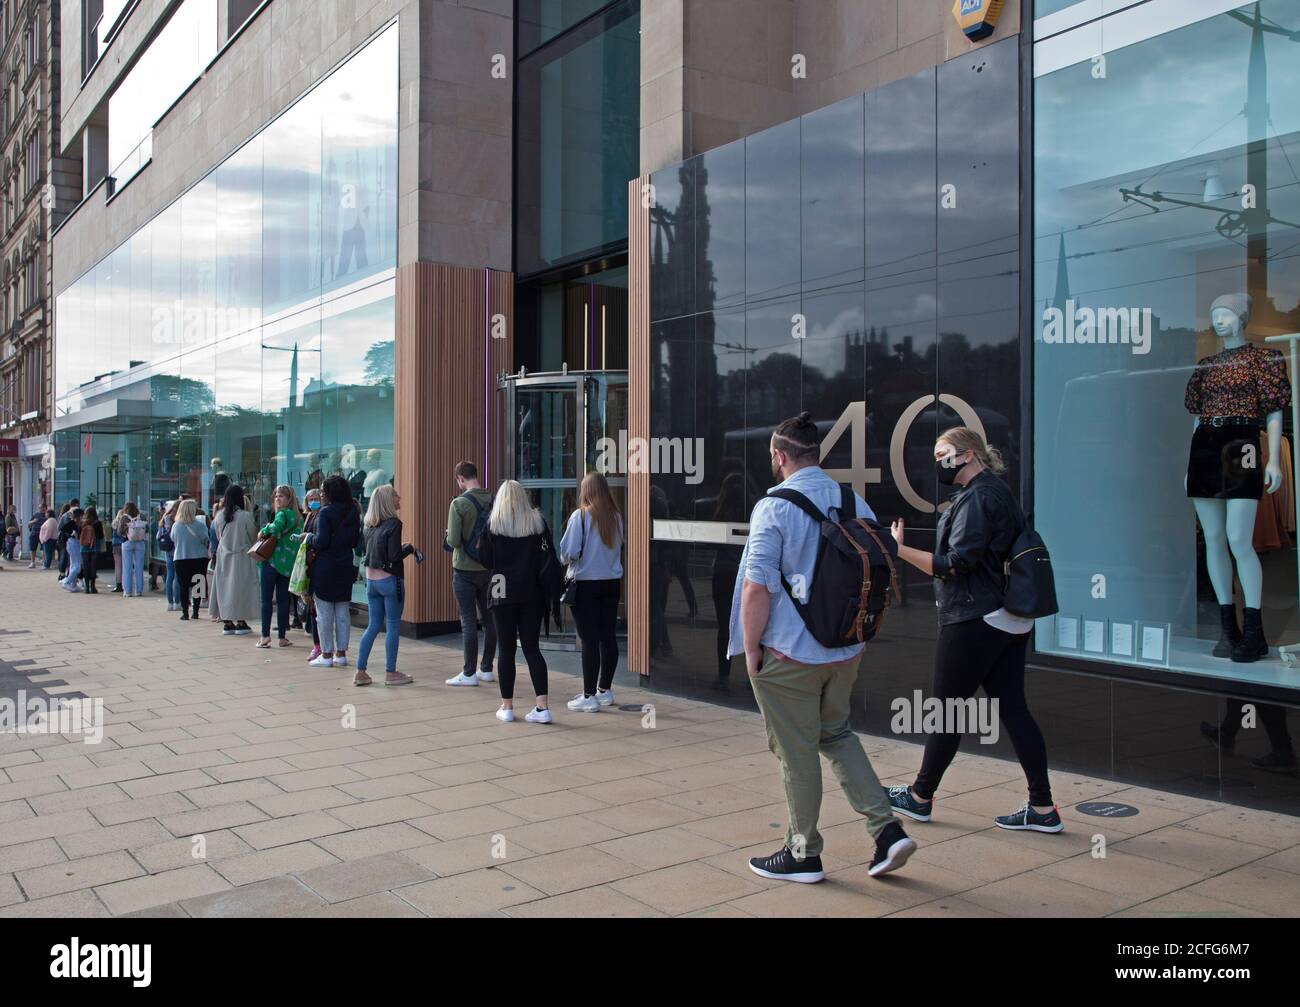 Édimbourg, Écosse, Royaume-Uni. 5 septembre 2020. Princes Street stocke de longues files d'attente socialement distancées devant les boutiques le samedi après-midi. Sur la photo, les jeunes font la queue devant H&M. Crédit : Arch White/Alamy Live News. Banque D'Images